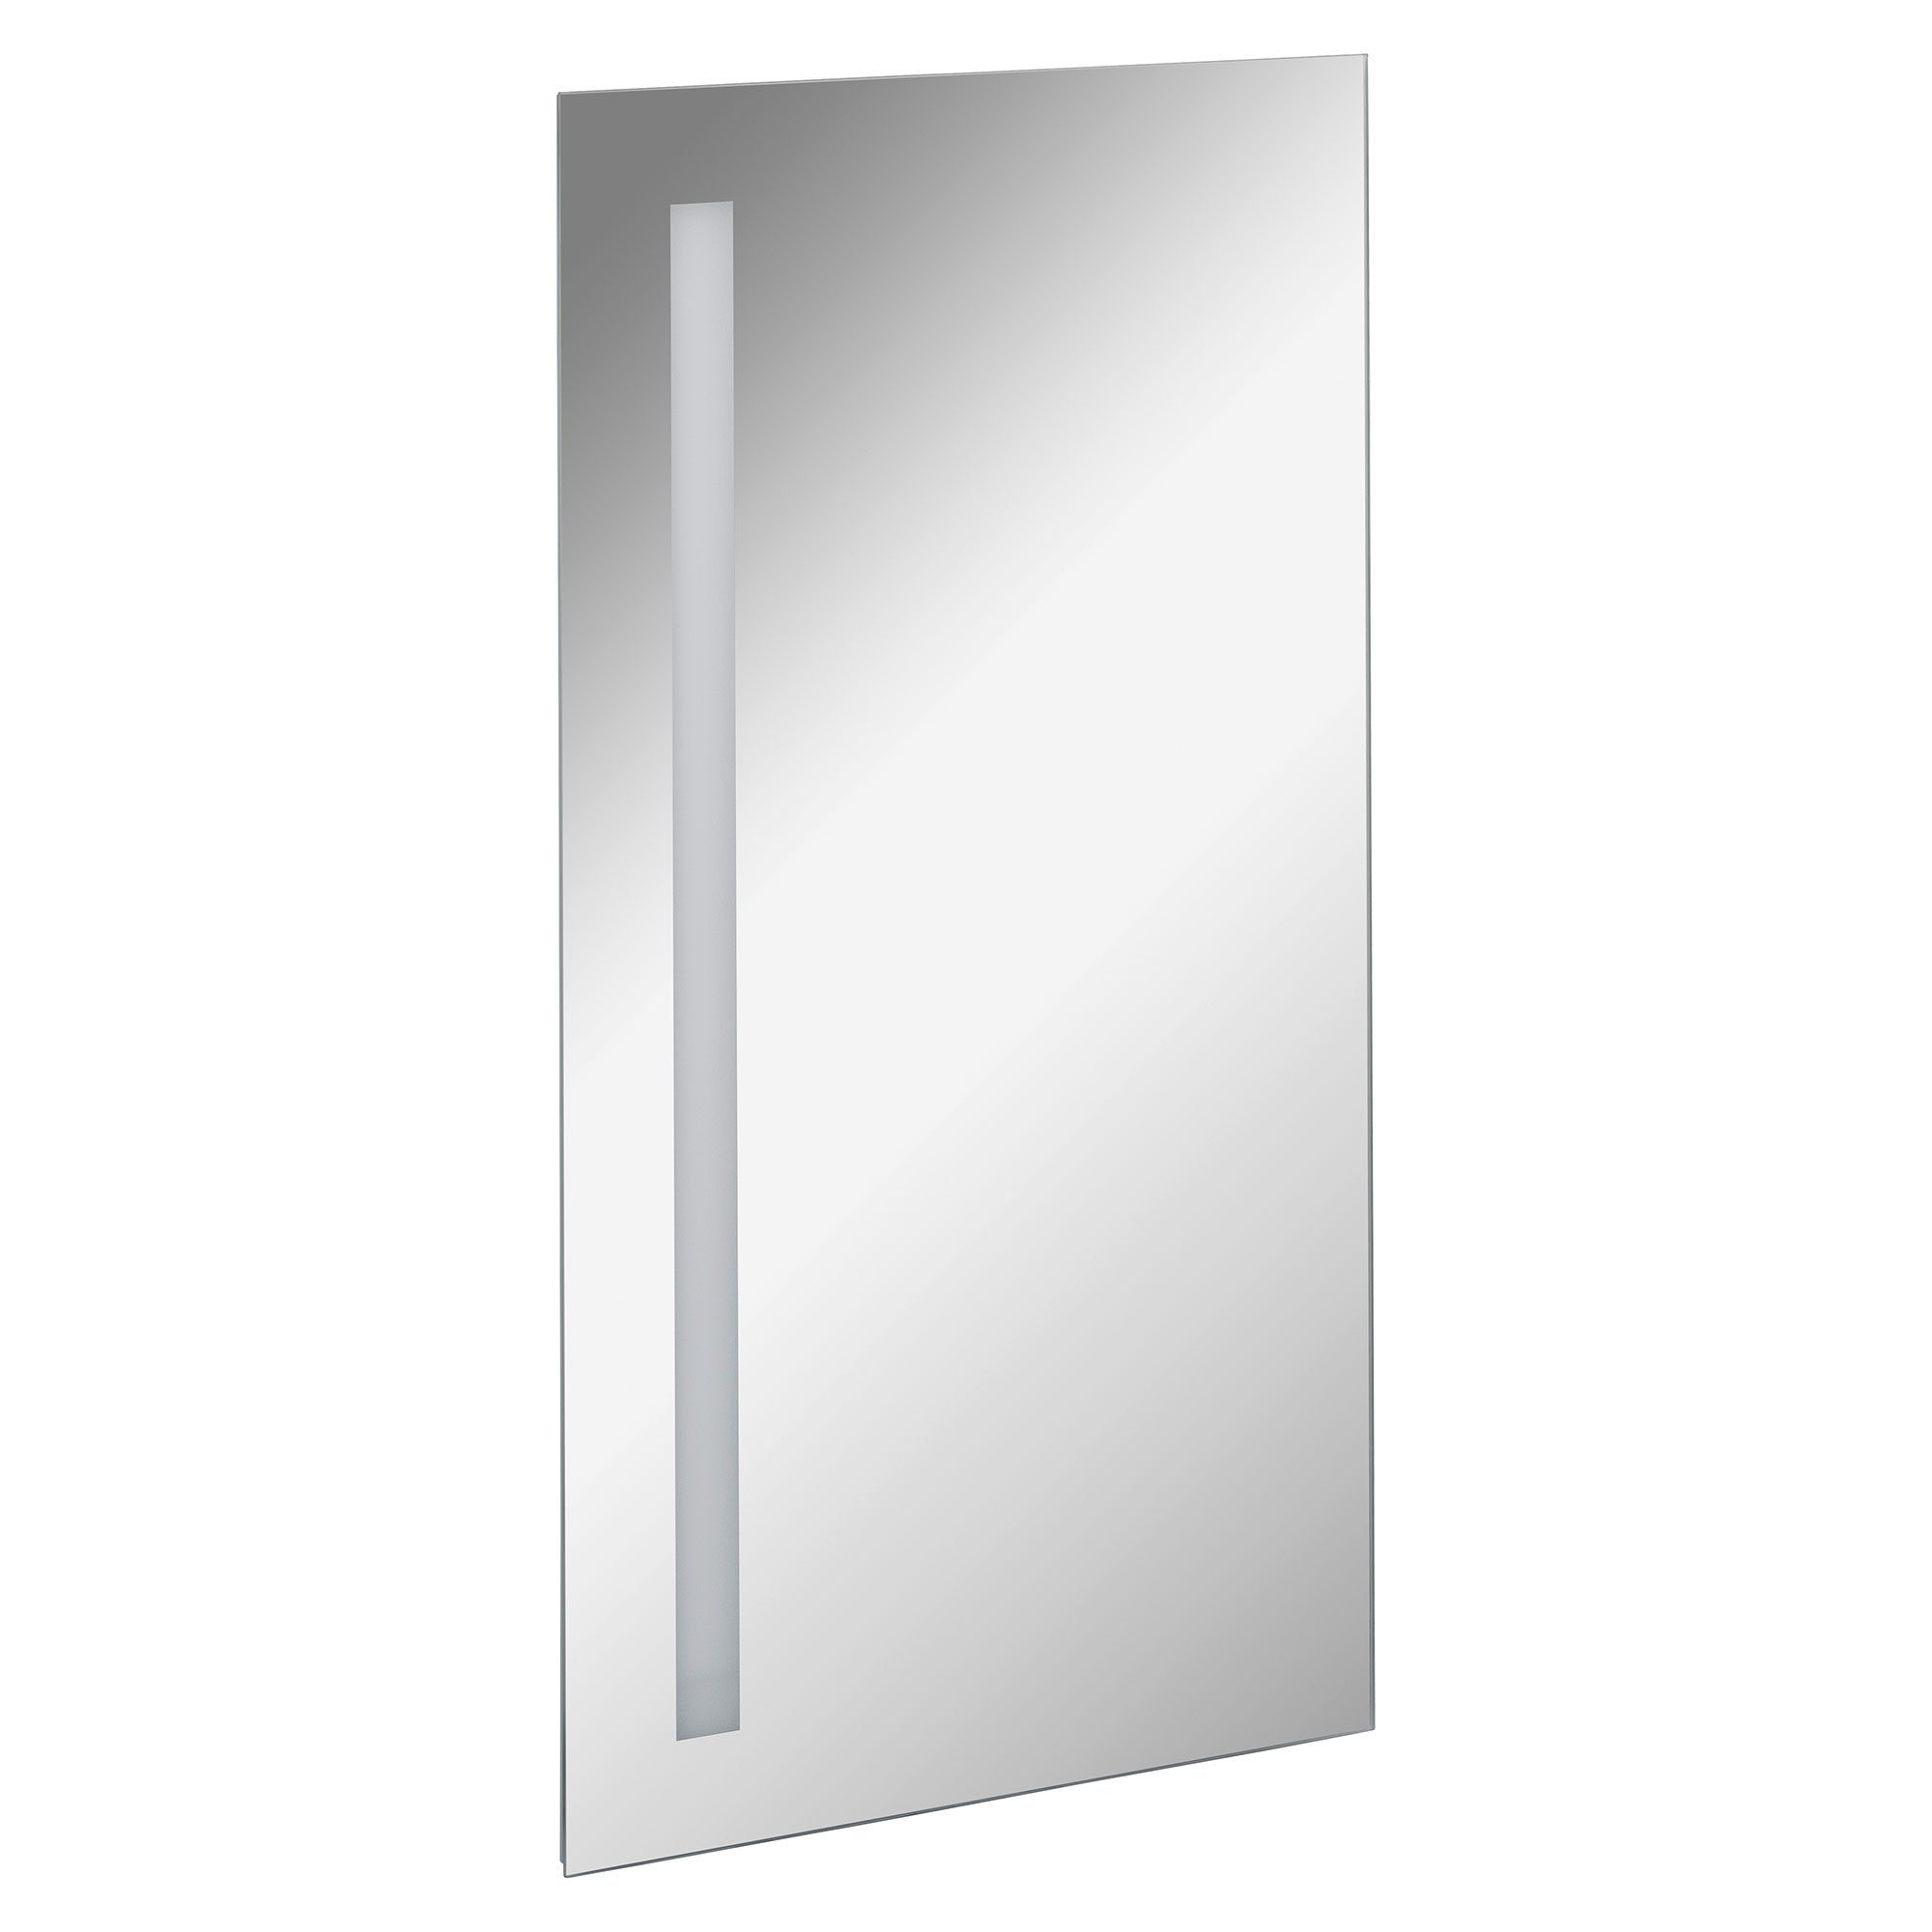 FACKELMANN Badspiegel Spiegelelement Linear - 40cm - mit Ambientebeleuchtung